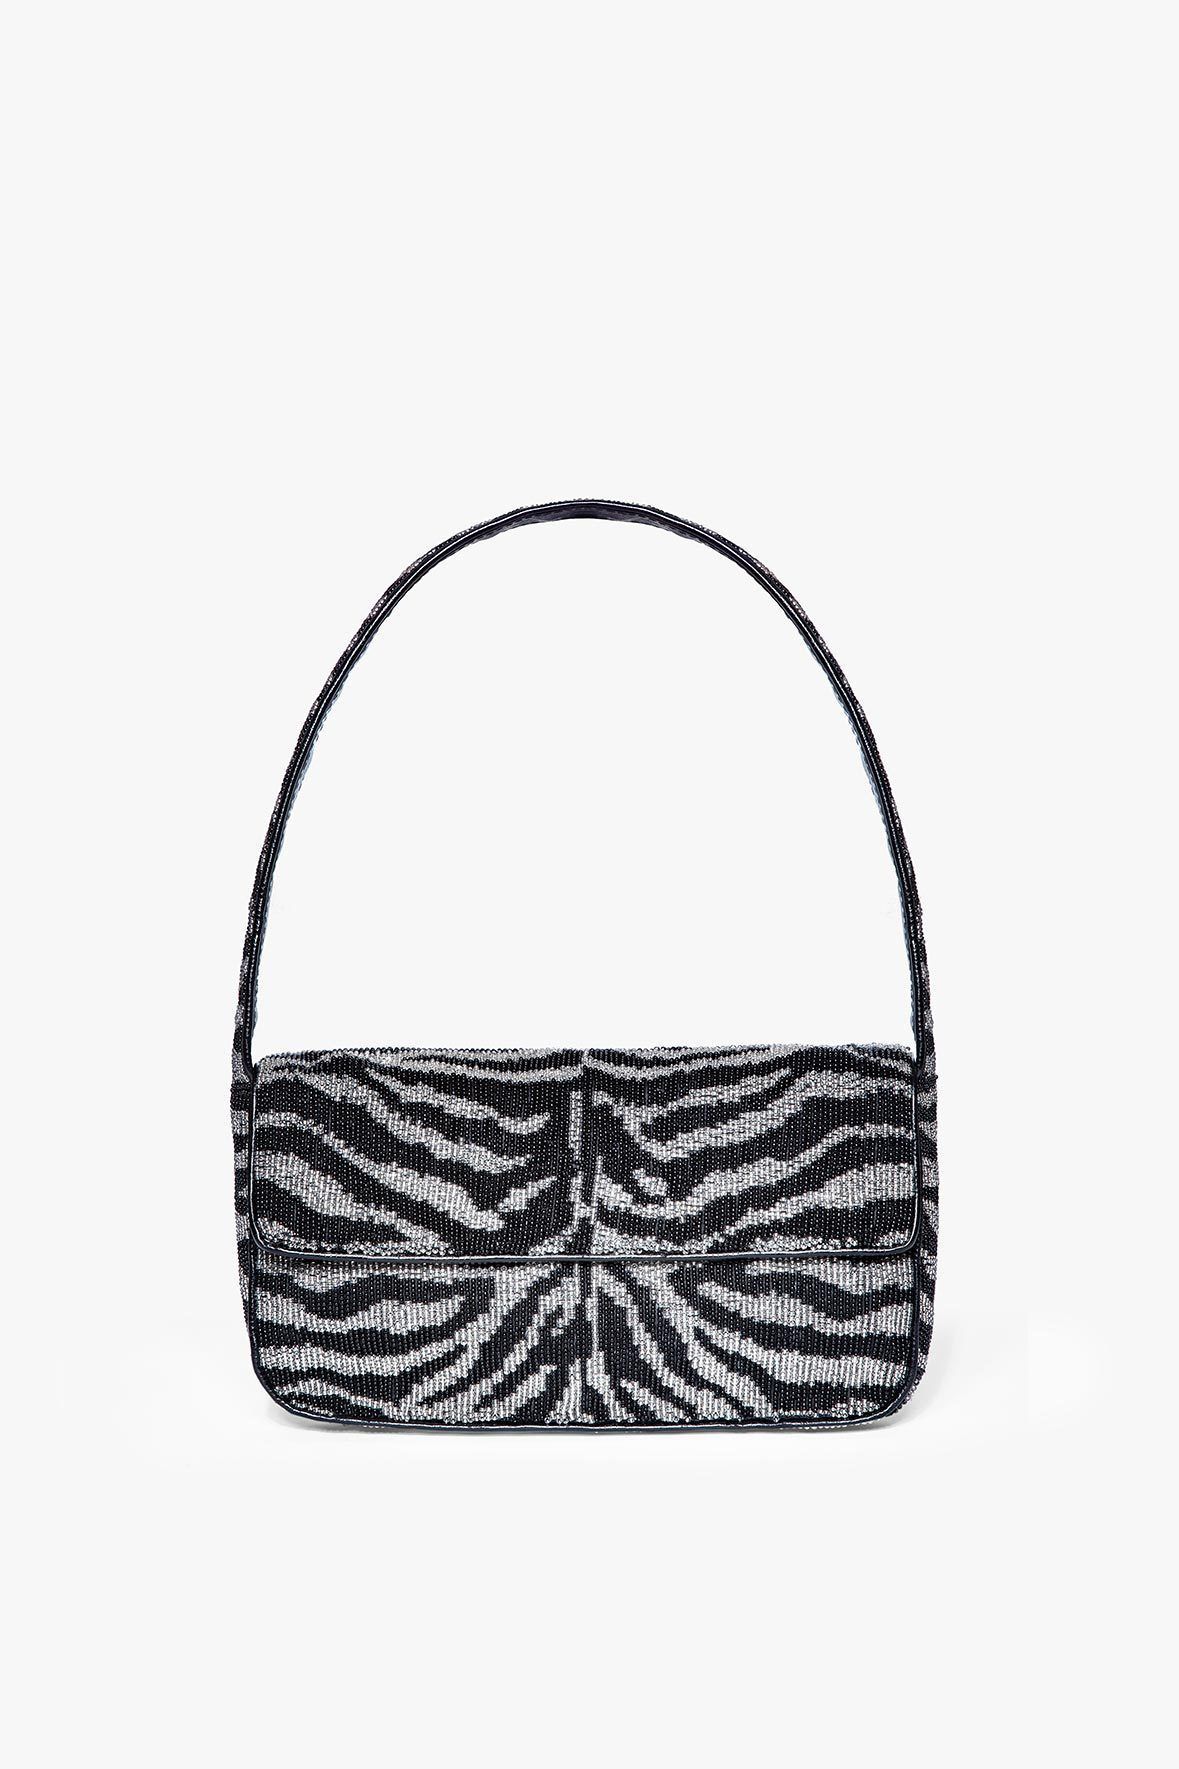 Best baguette handbags to shop online 